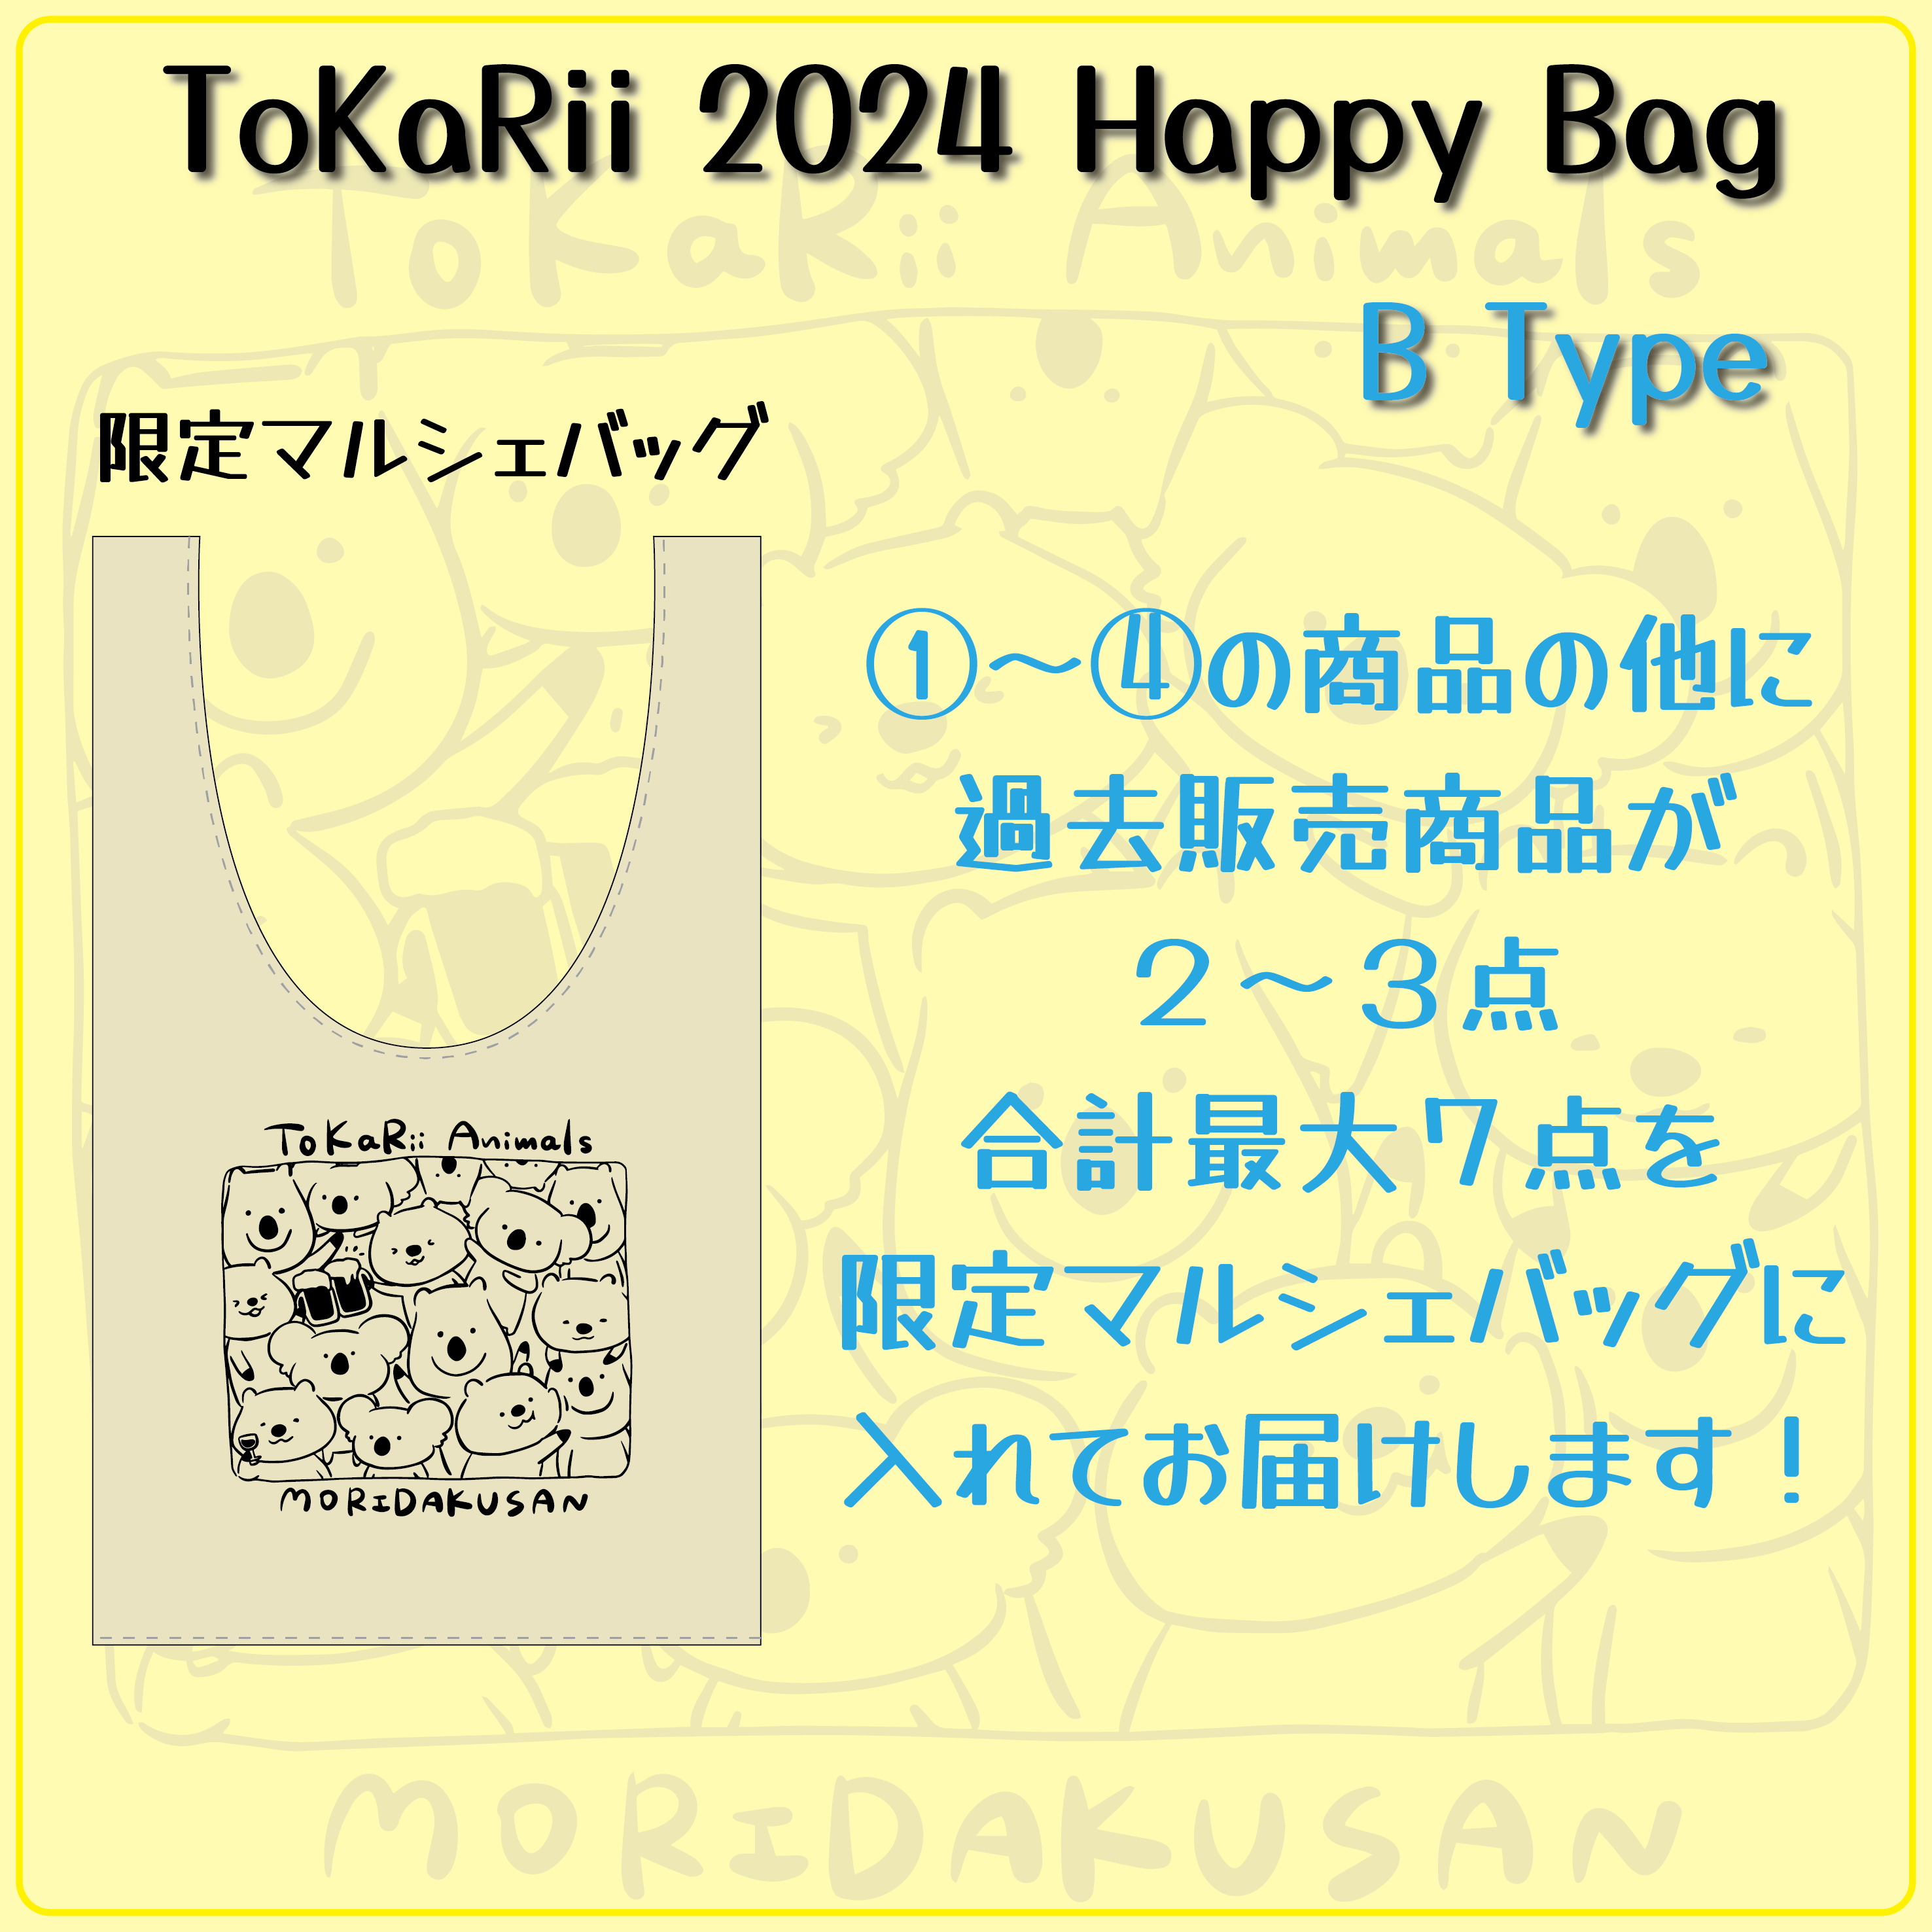 Happy Bag Type B